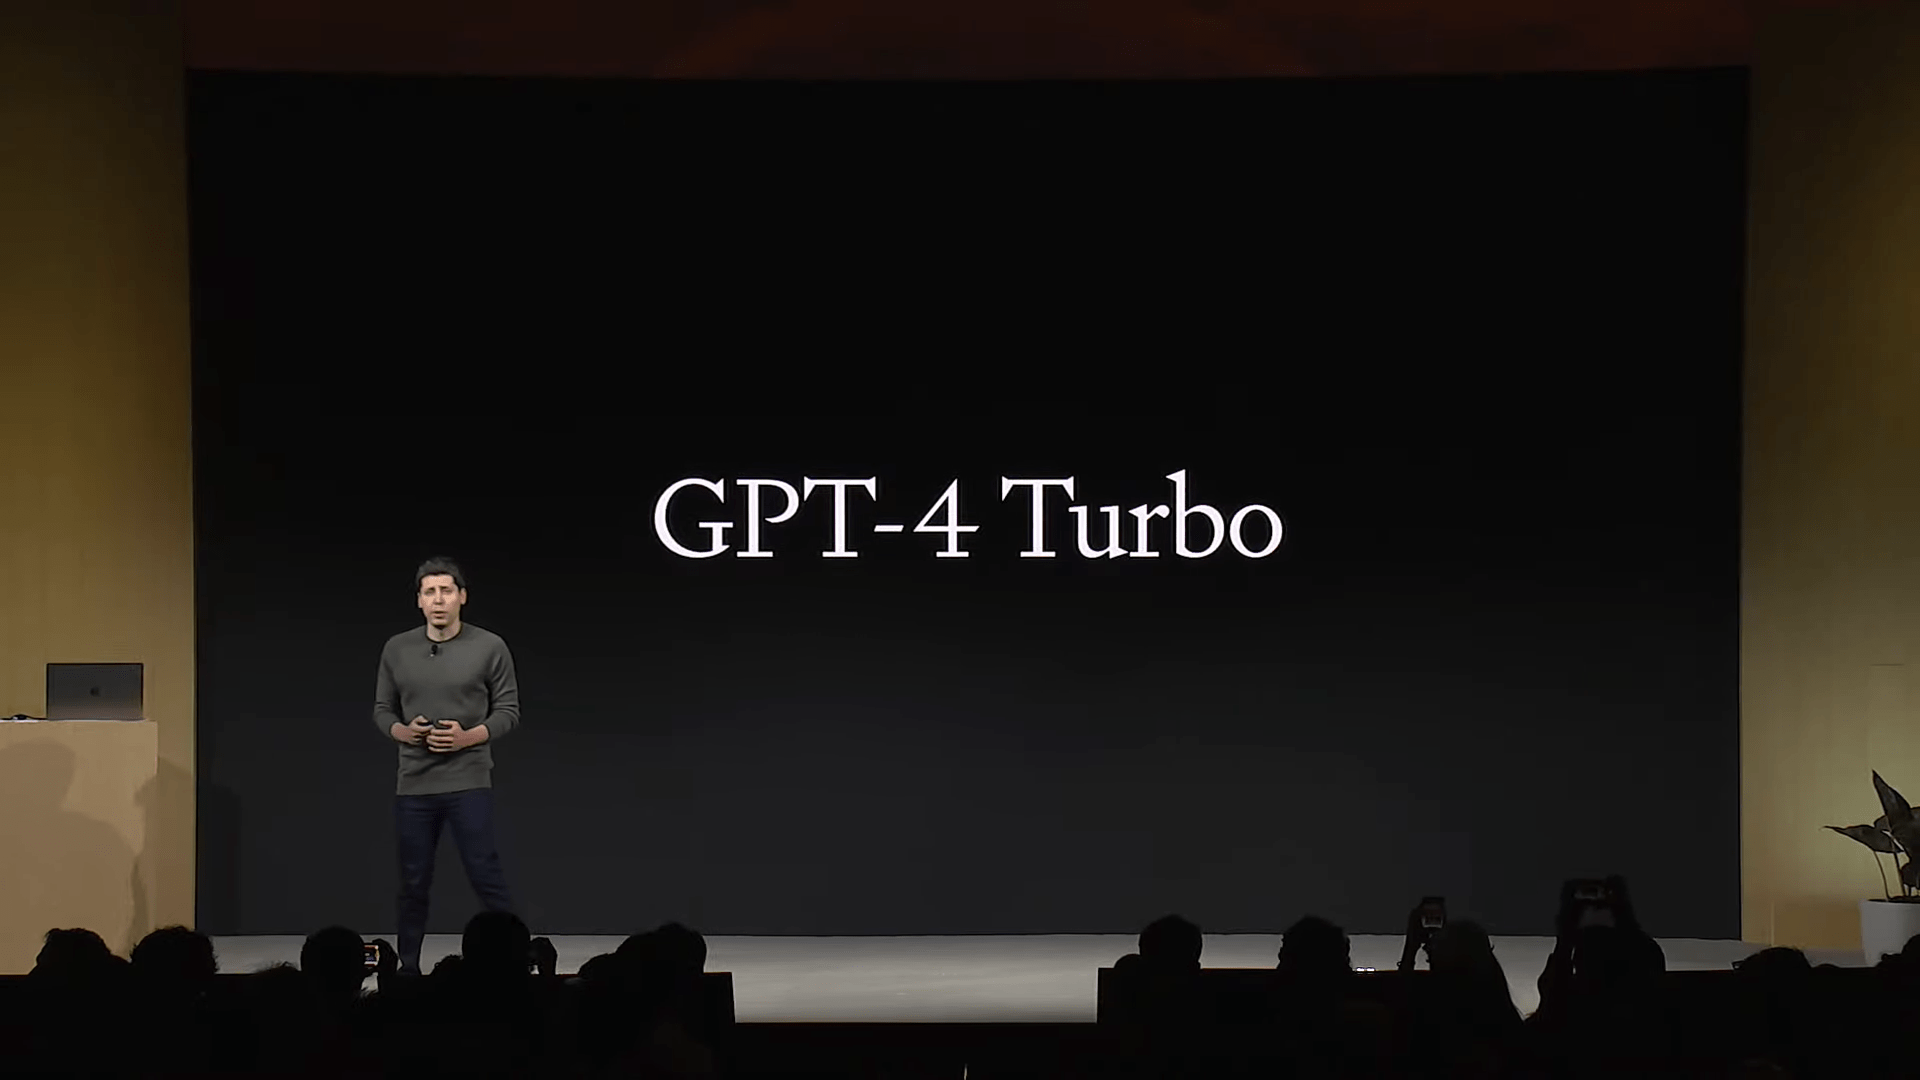 Ra mắt GPT-4 Turbo mới, thông minh hơn, chi phí thấp hơn, tùy biến cao hơn, OpenAI đang cách mạng hóa cả ngành AI - Ảnh 2.